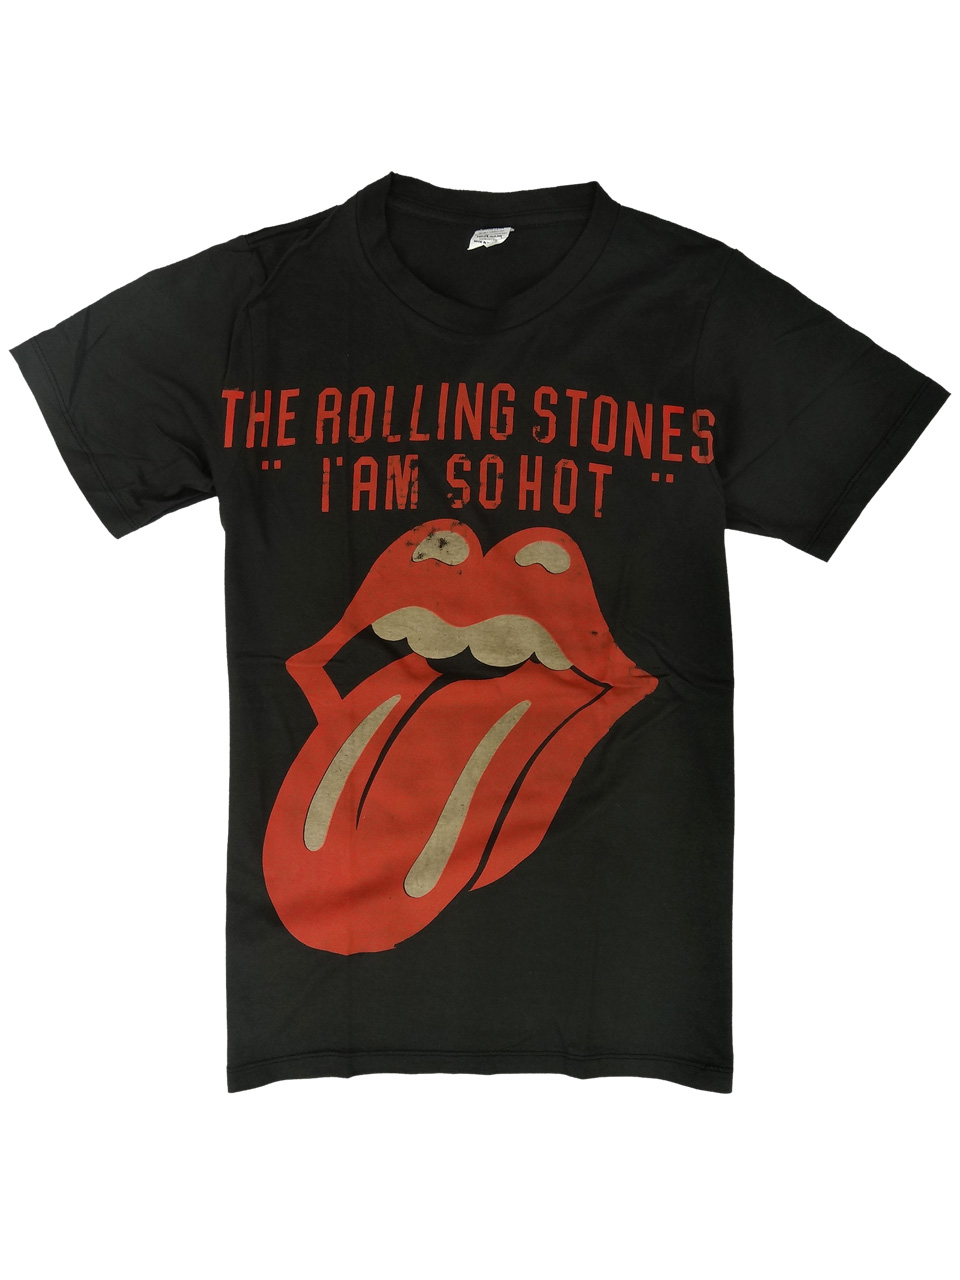 ヴィンテージ風 ロックTシャツ The Rolling Stones ザ ローリング ストーンズ I AM SO HOT brt-0256